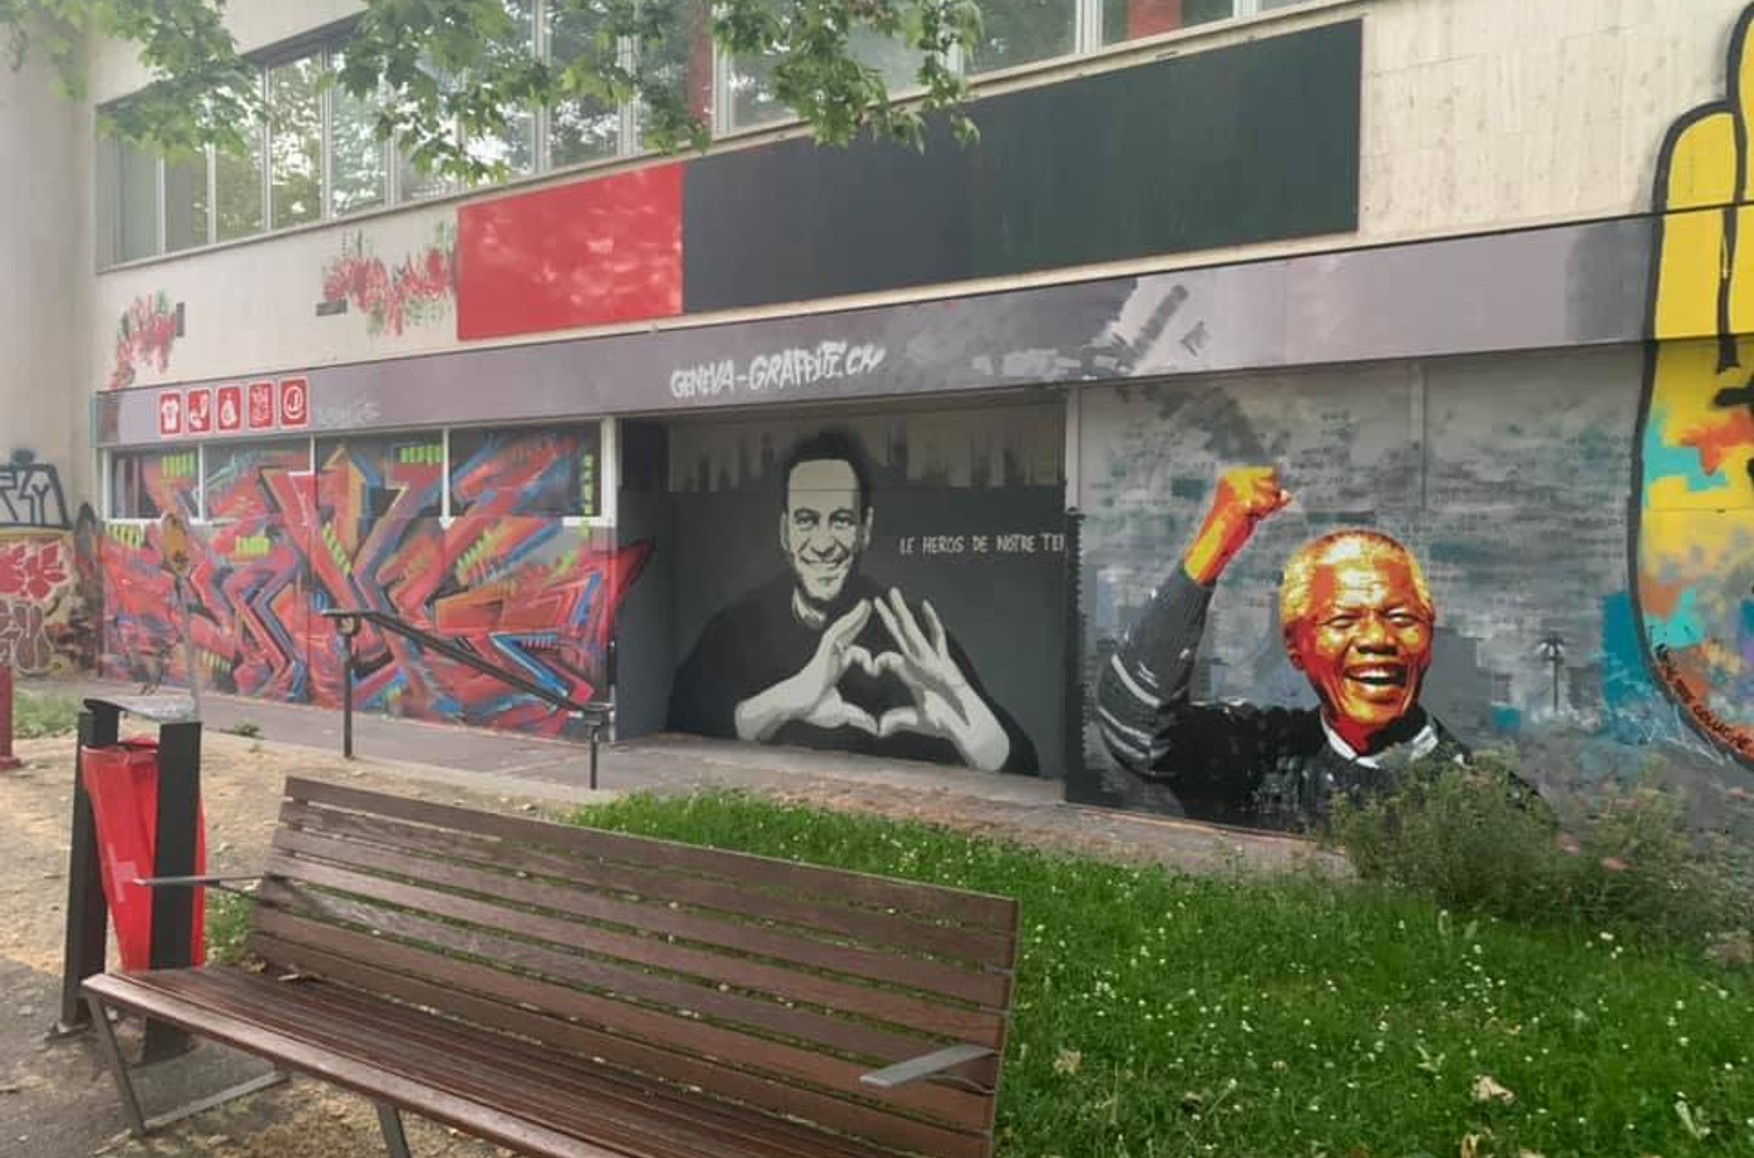 У Женеві перед зустріччю Путіна і Байдена з'явилося графіті з Навальний. Малюнок повторює петербурзький, зафарбований комунальниками